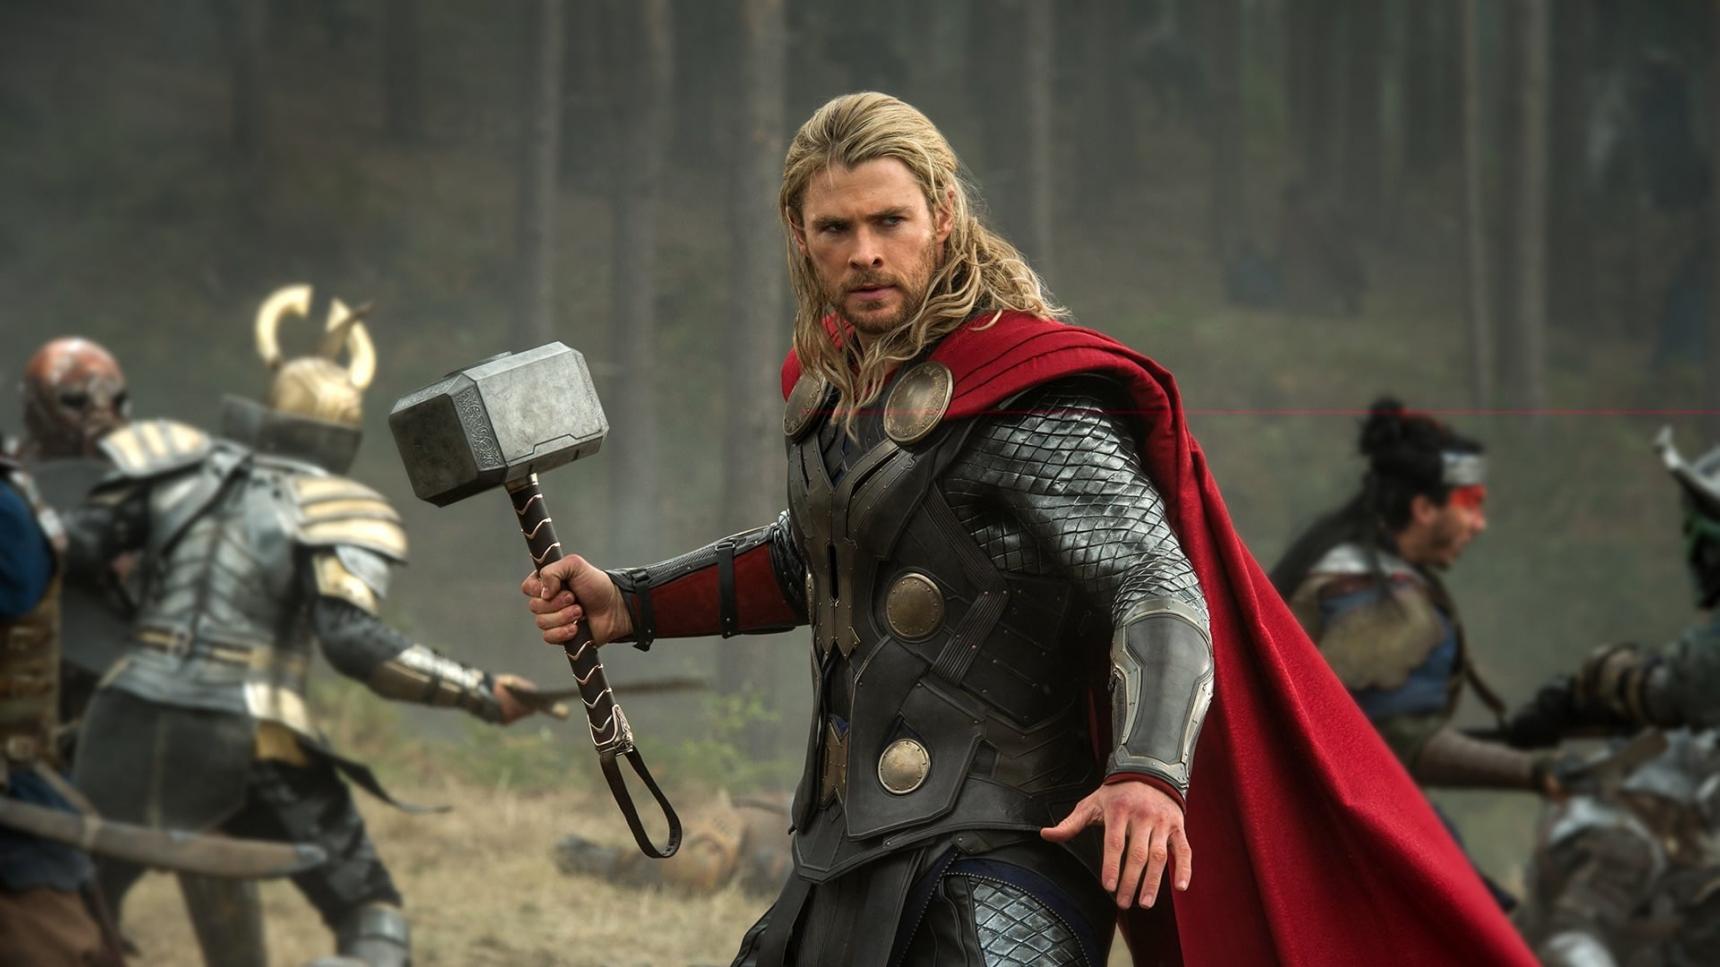 Fondo de pantalla de la película Thor: el mundo oscuro en CUEVANA3 gratis